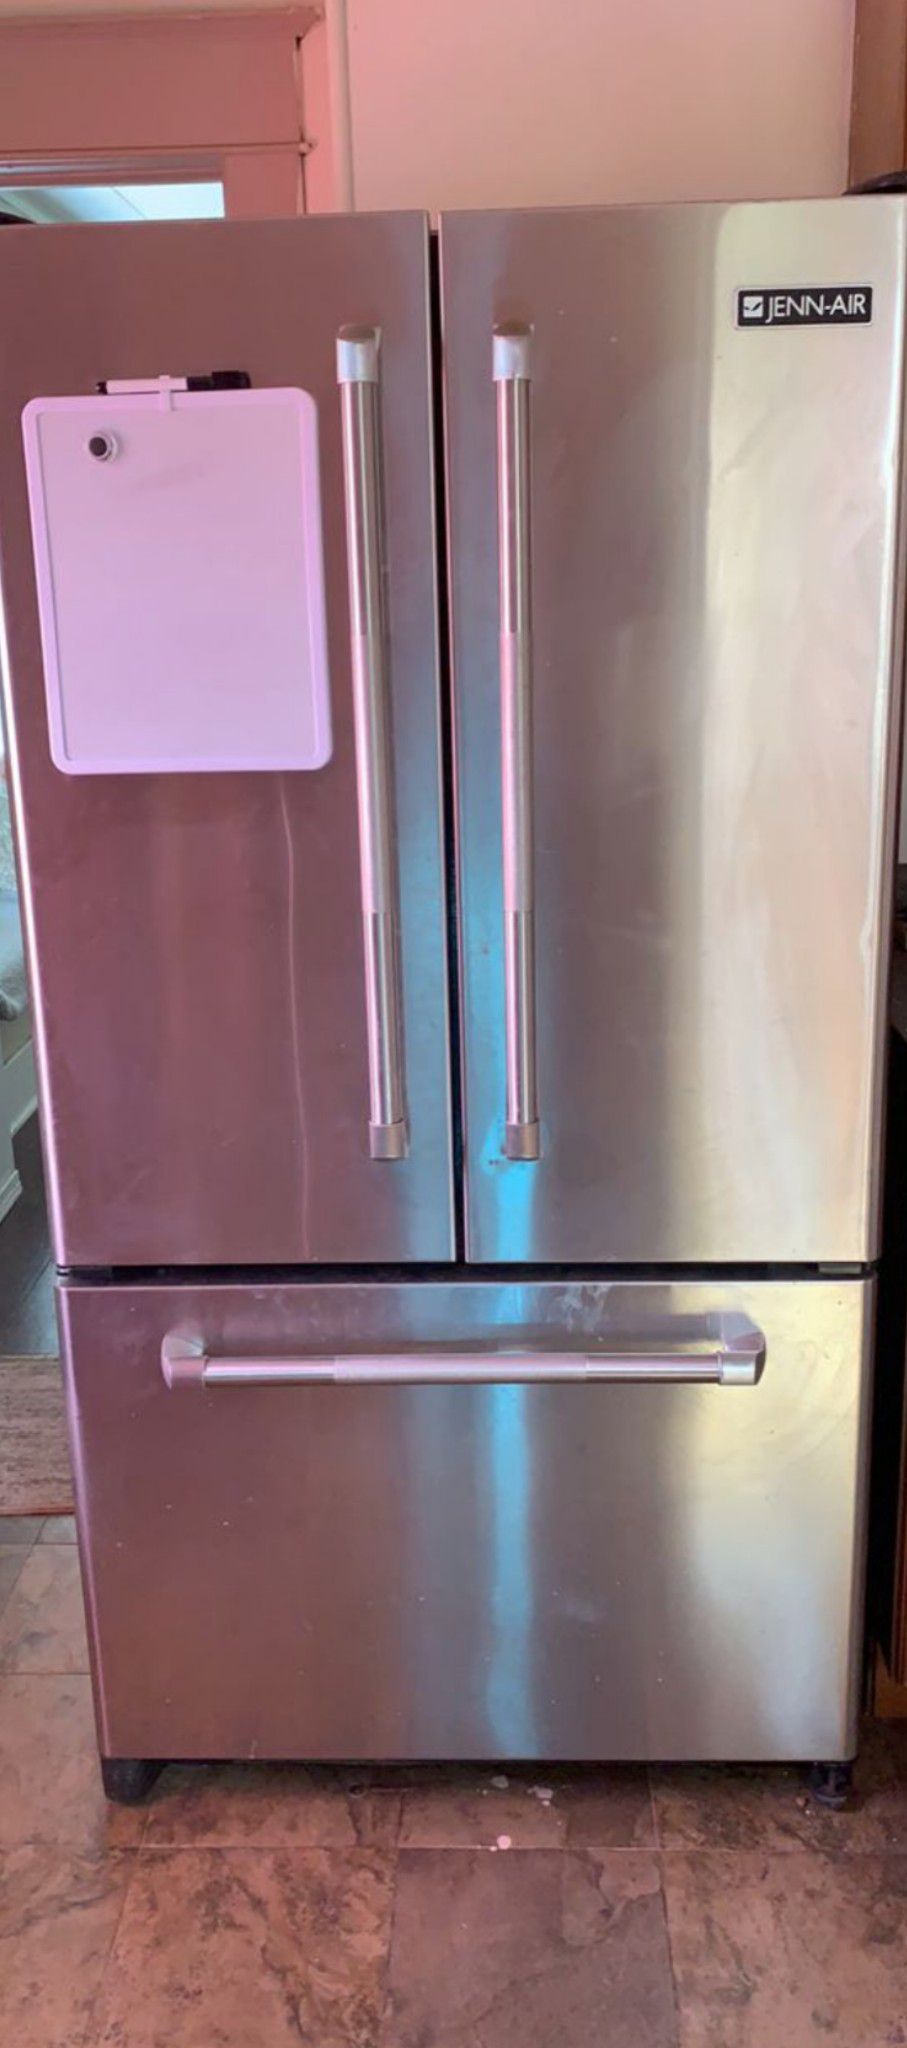 Jen-air refrigerator